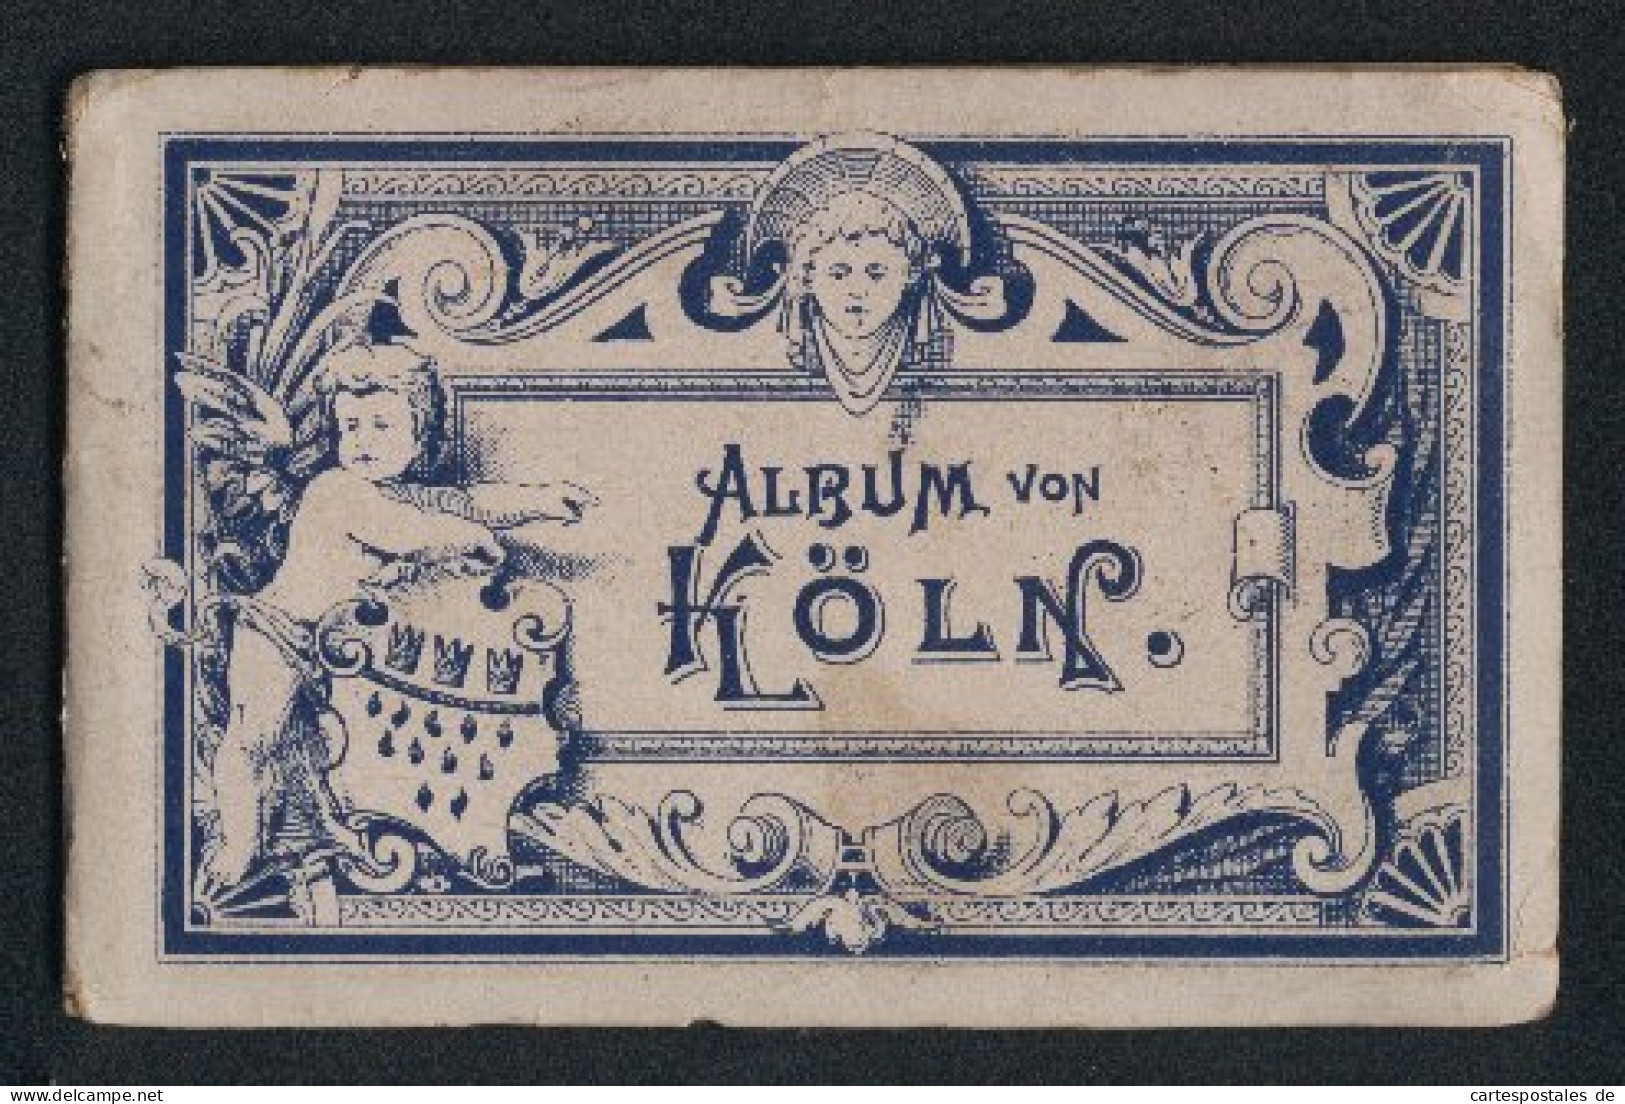 Leporello-Album Köln Mit 12 Lithographie-Ansichten, Bahnhof, Flora, Hohenzollerring, Museum Walraff-Richartz, Dom, Po  - Litografía